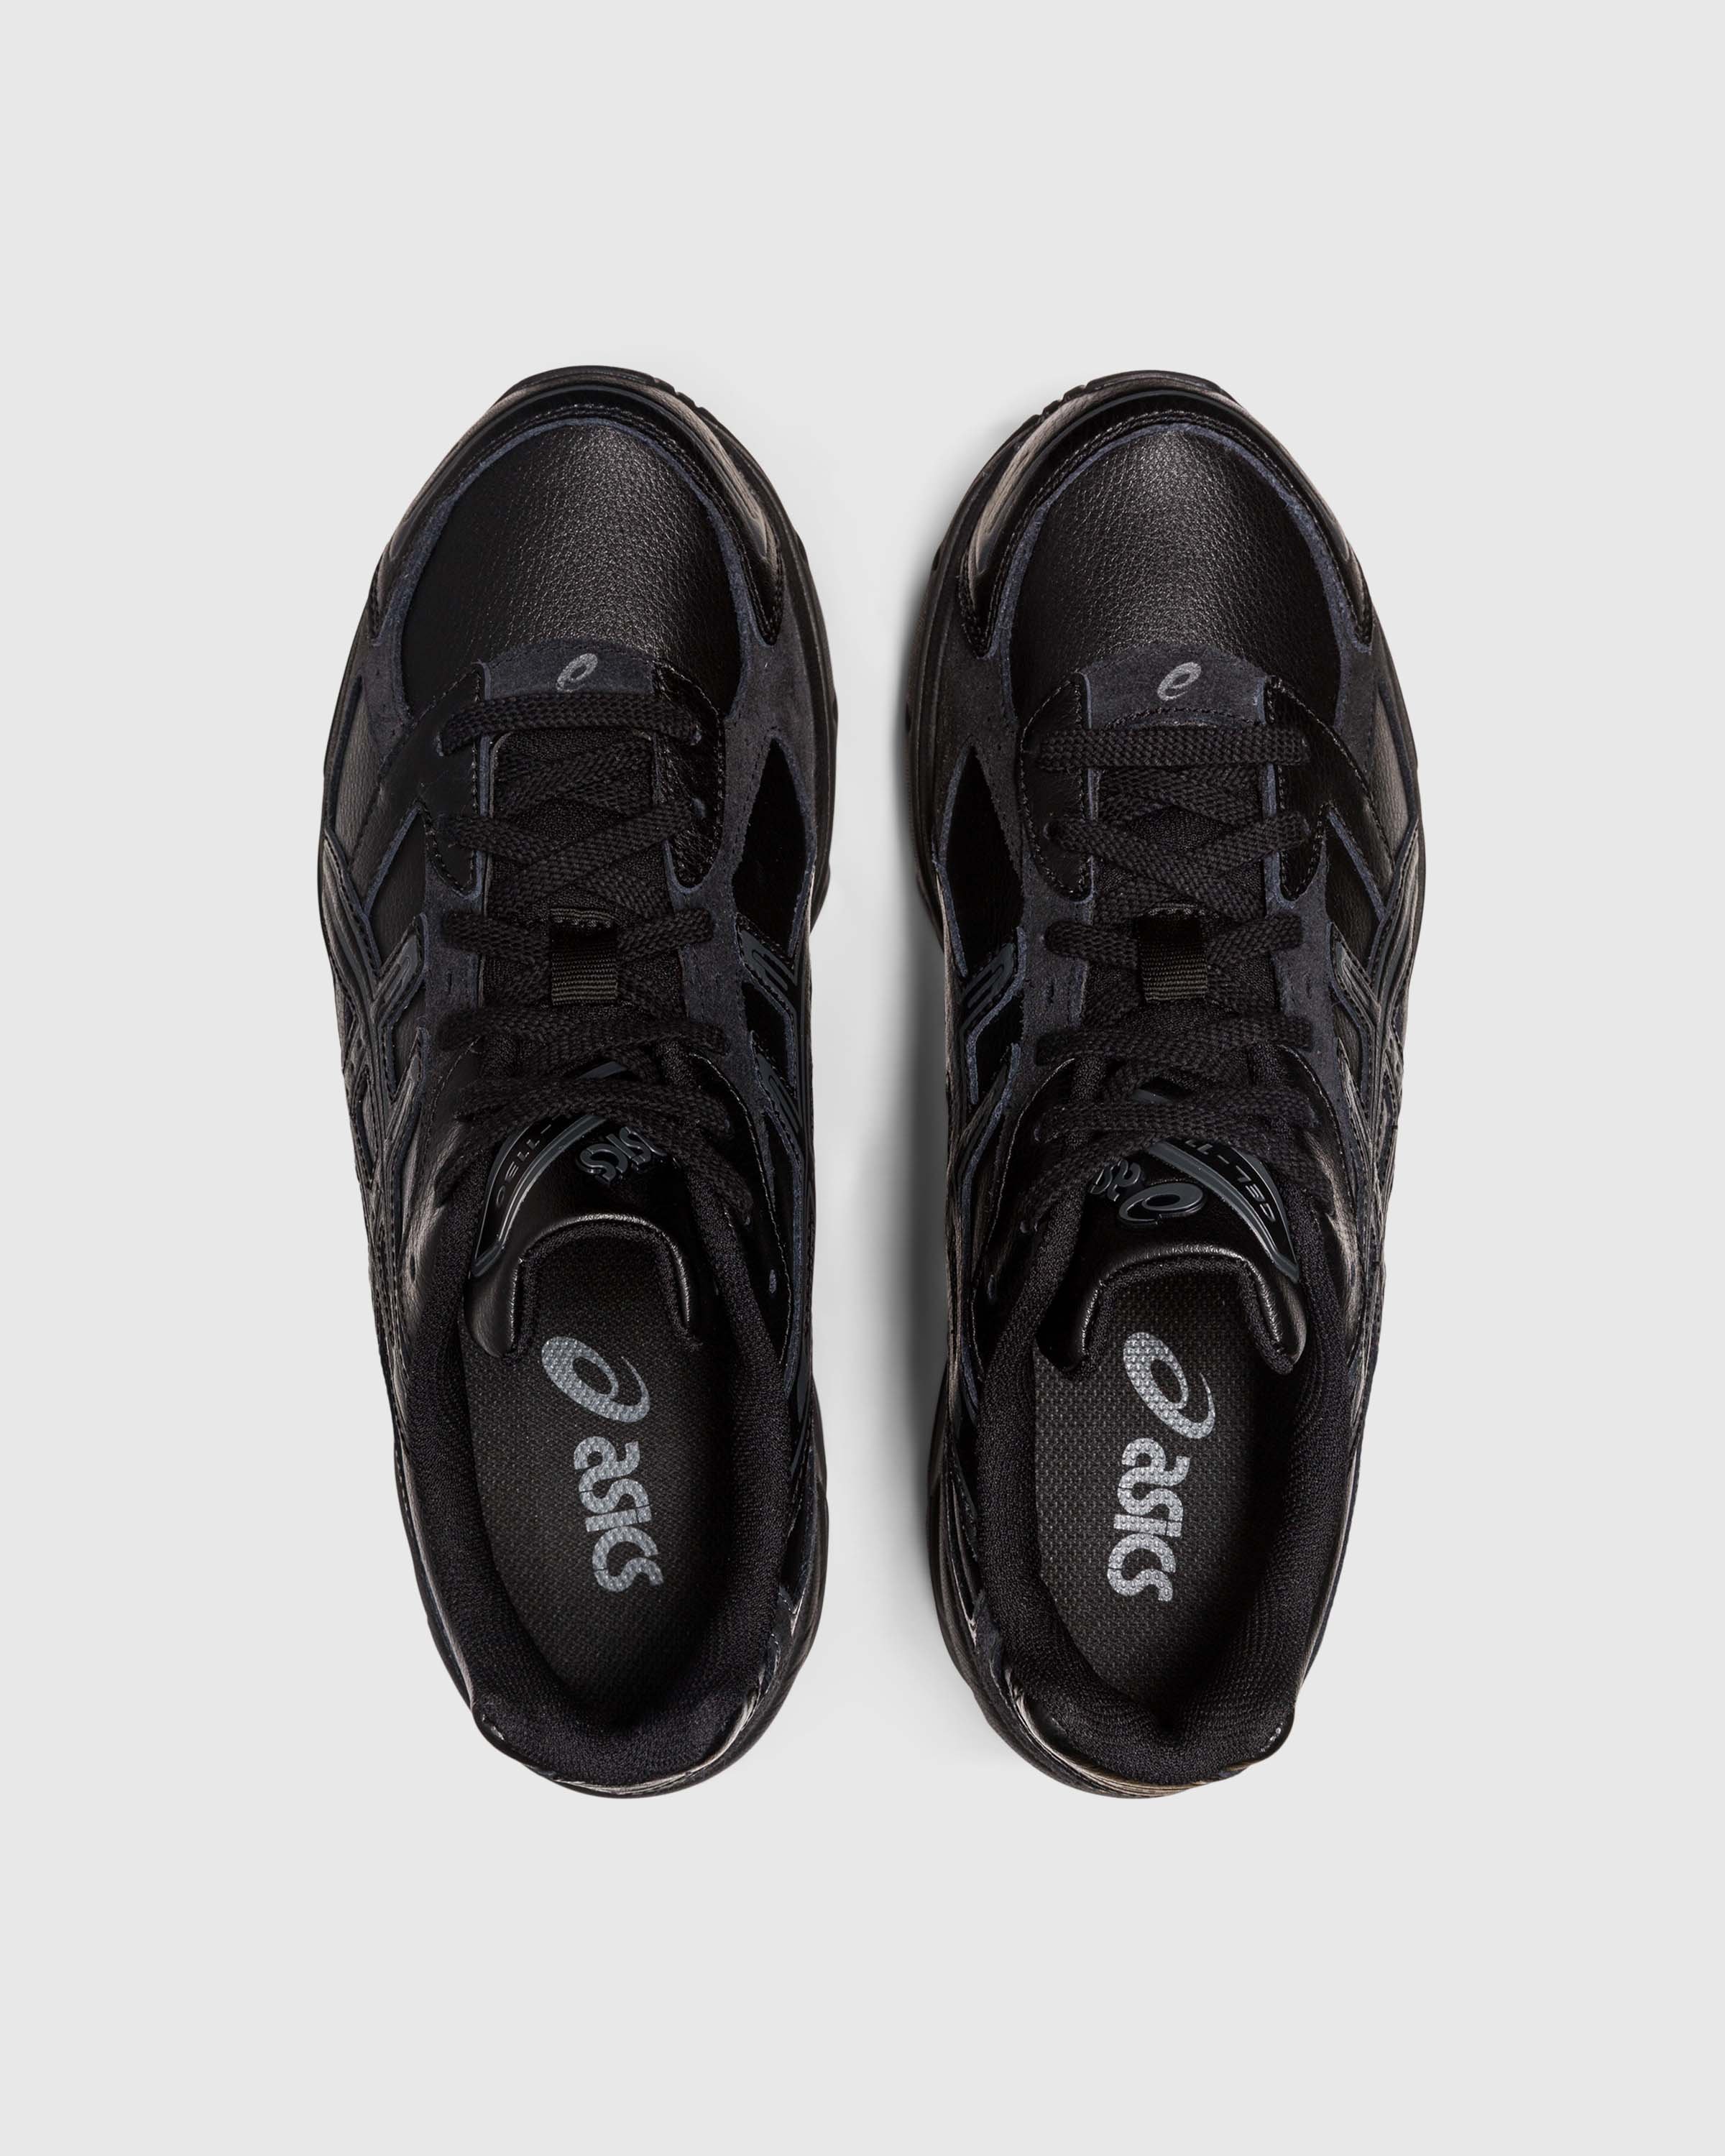 asics - GEL-1130 Black - Footwear - Black - Image 5